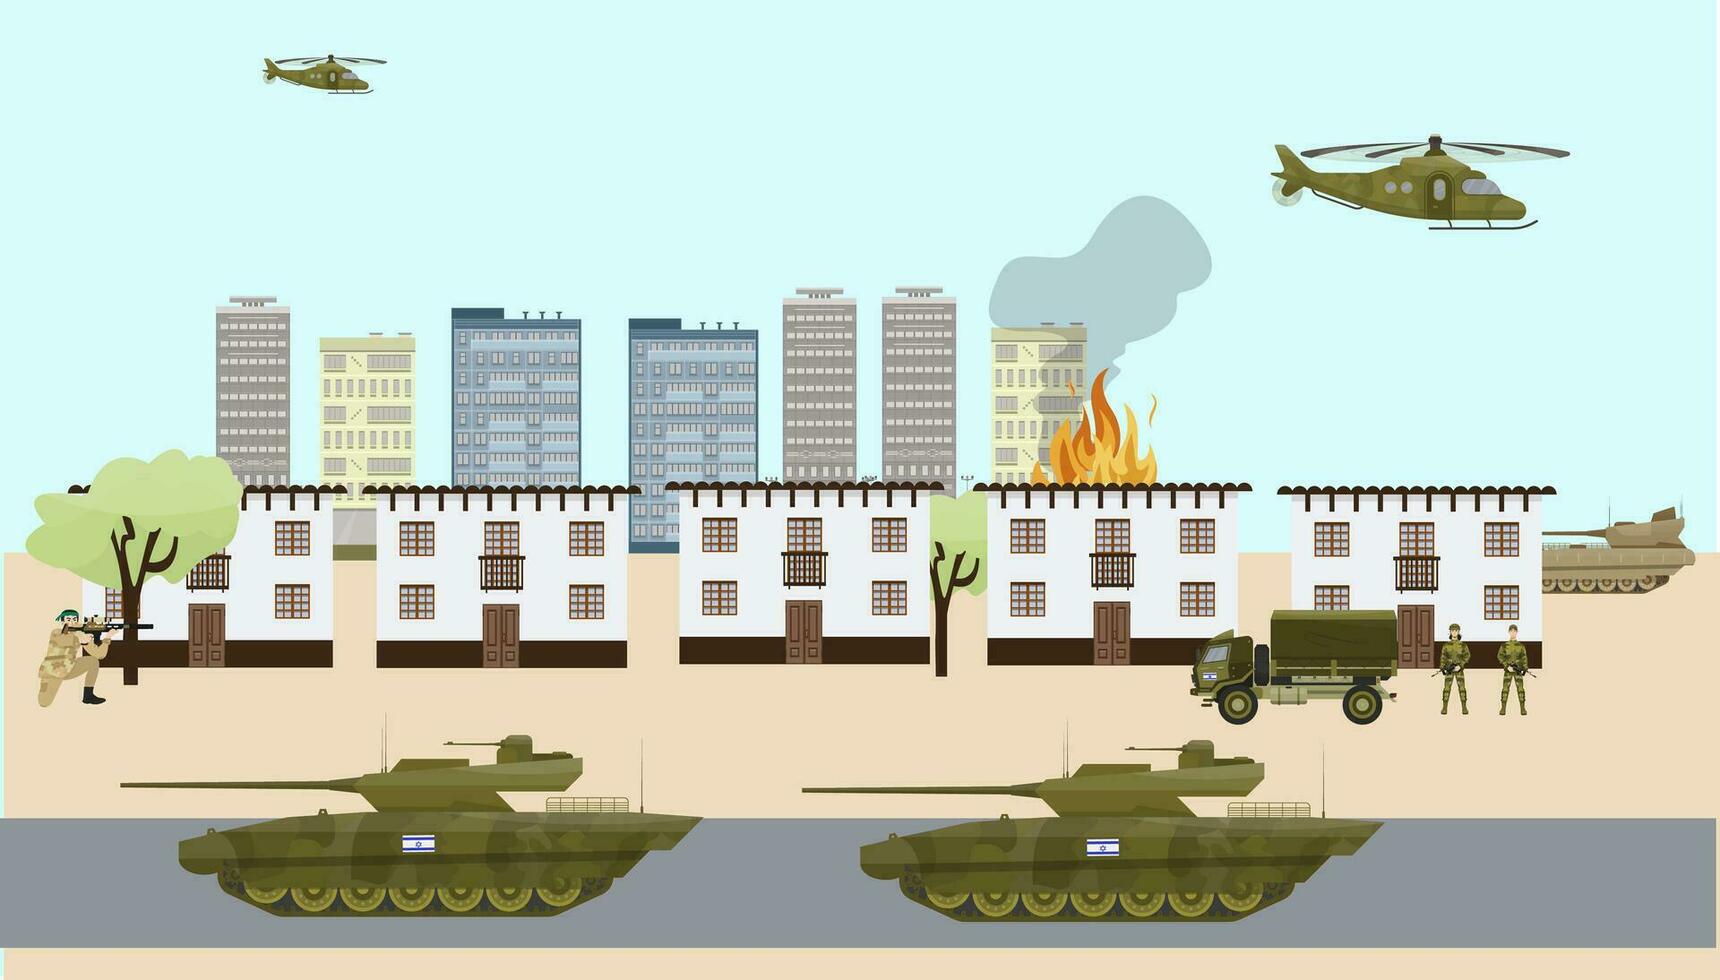 israelí tropas en gaza. israelí - palestino conflicto. guerra en medio este. tanques ataque el ciudad. soldados en contra terroristas vector